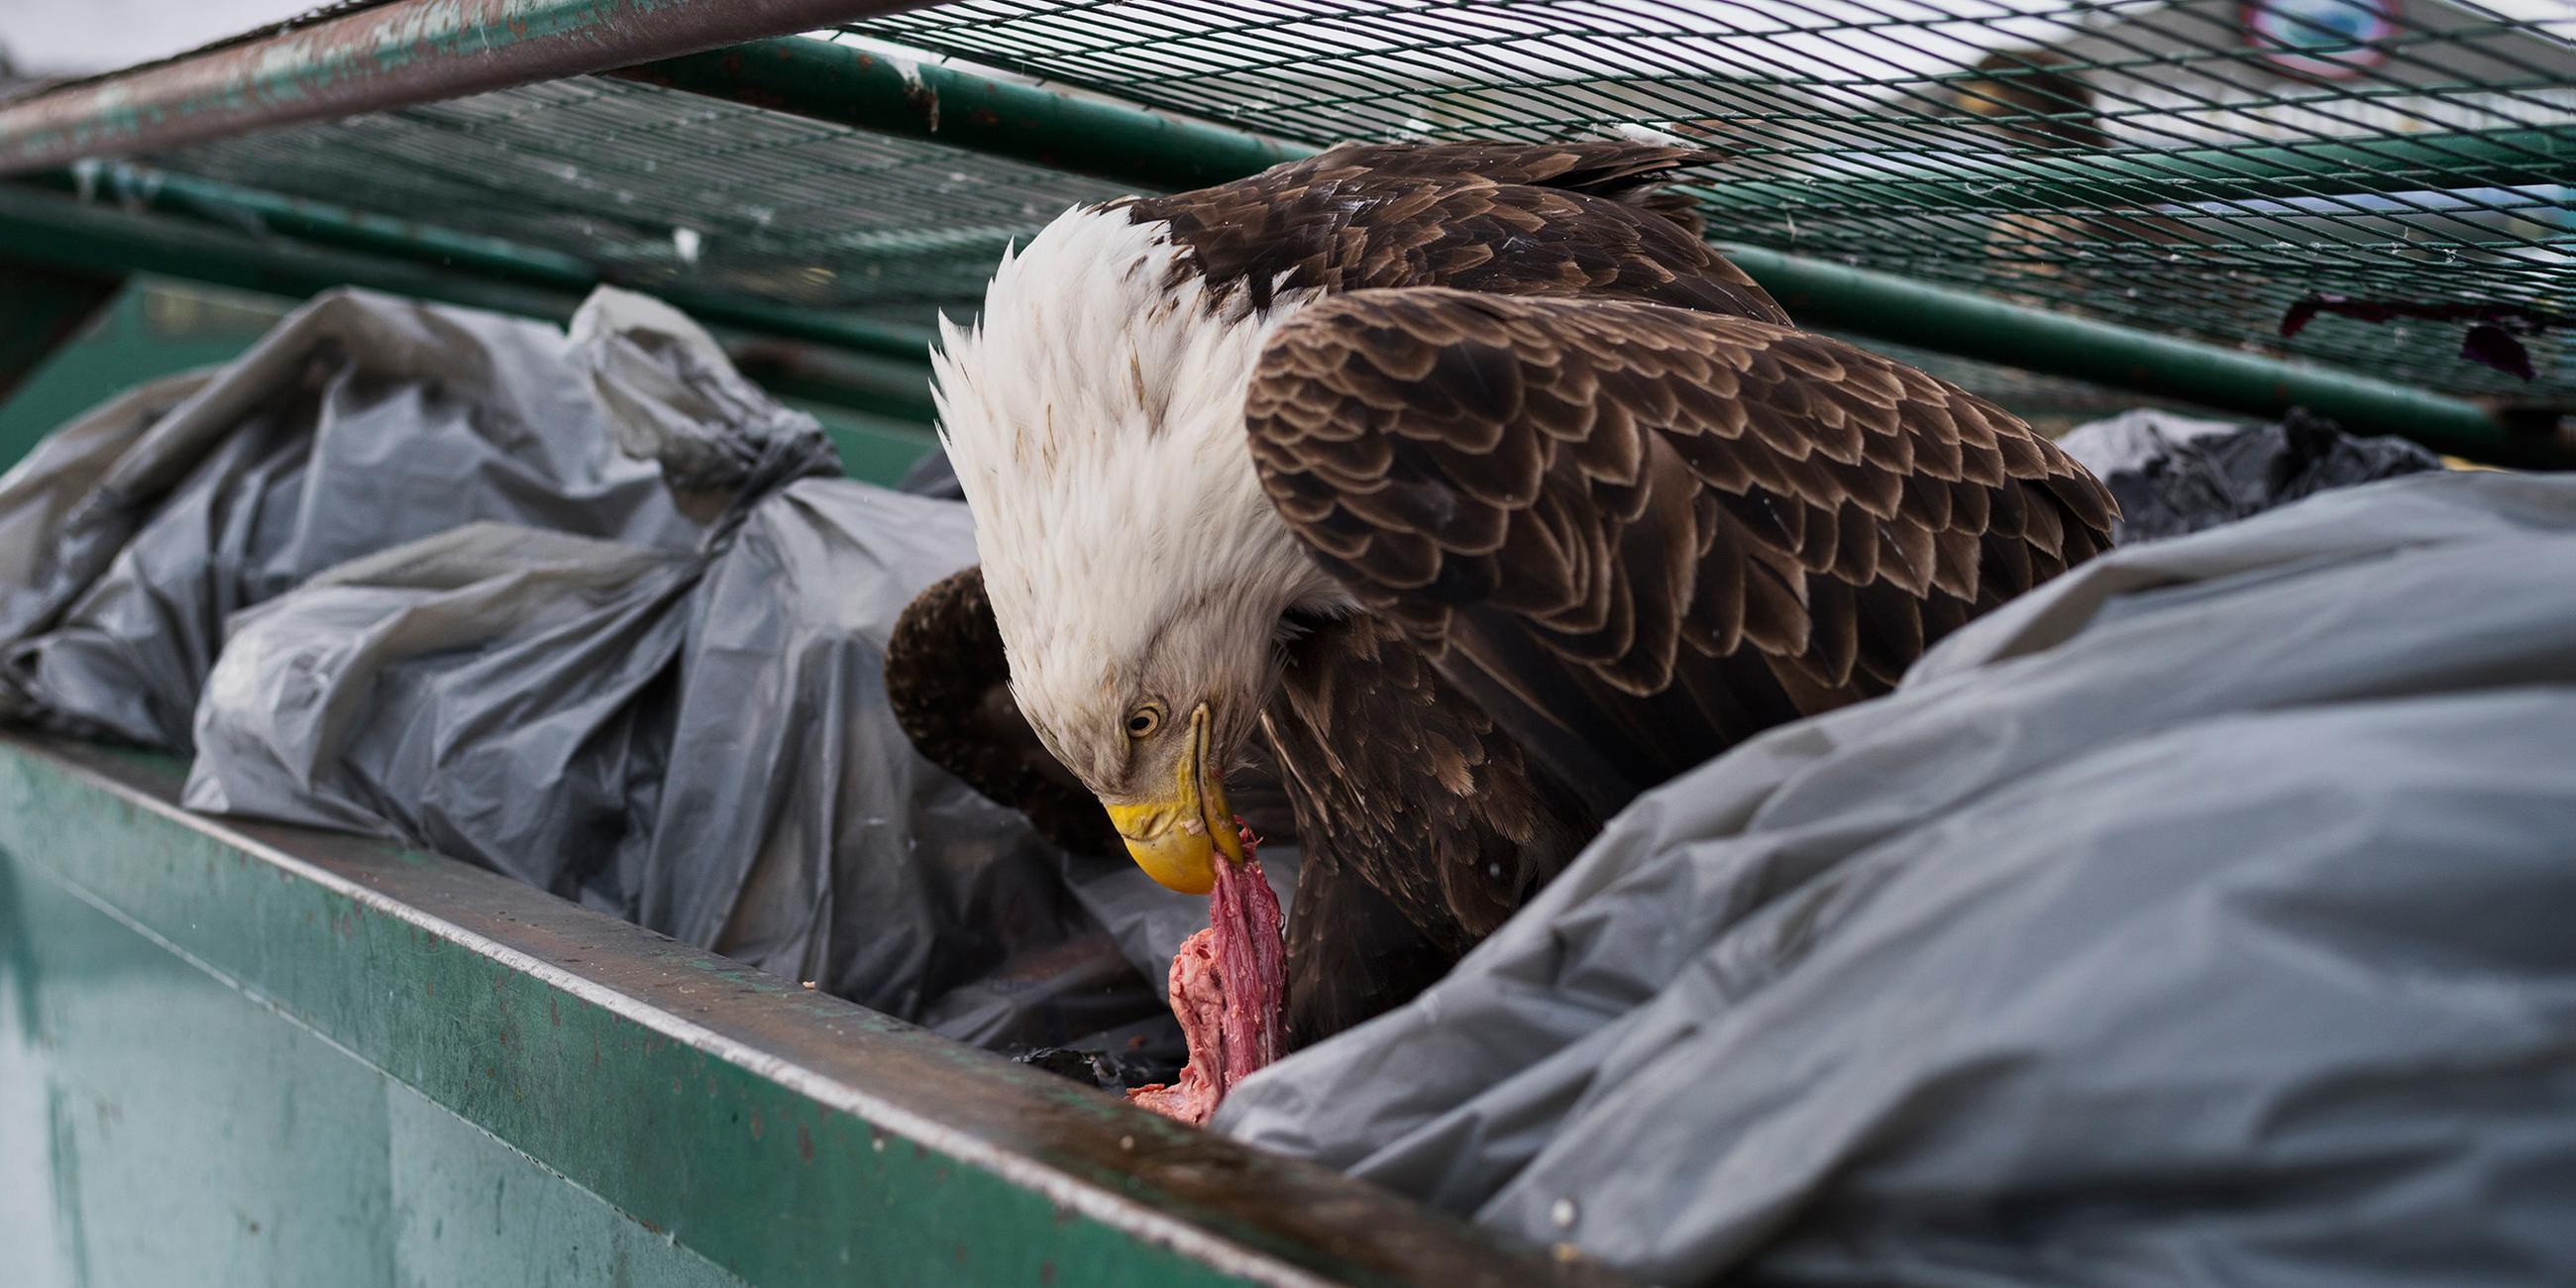 Corey Arnold: Dumpster Diver - Adler sucht in einer Mülltonne nach Nahrung